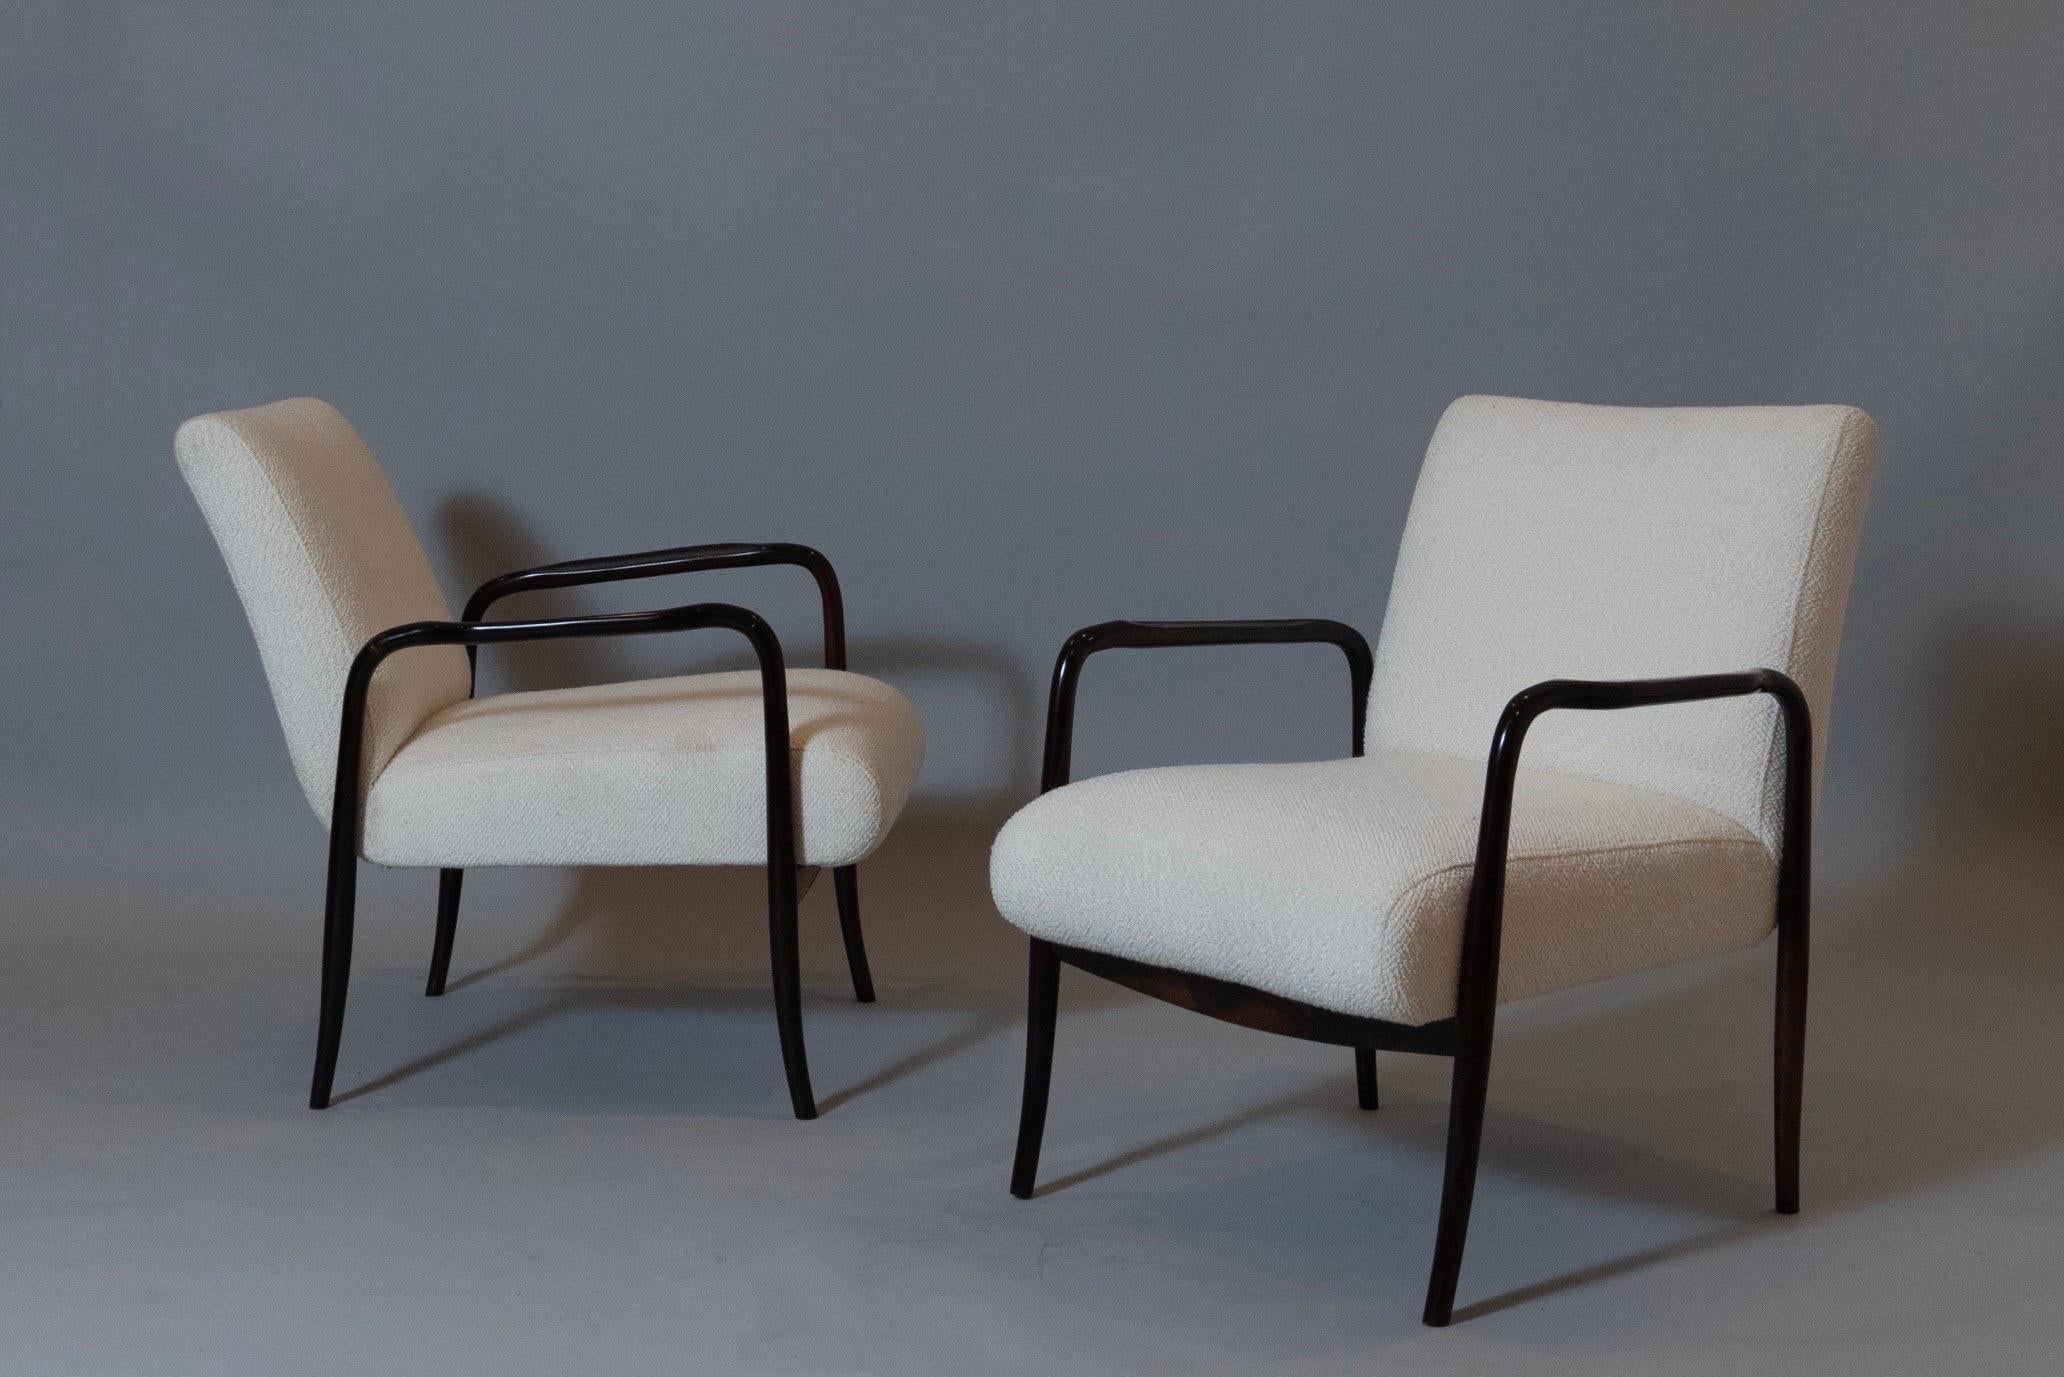 Joaquim Tenreiro (1906 - 1992) 

Une étonnante paire de fauteuils d'une légèreté et d'une élégance exceptionnelles, en jacaranda, par le pionnier du modernisme brésilien Joaquim Tenreiro. Avec leur profil élancé et leurs châssis magnifiquement